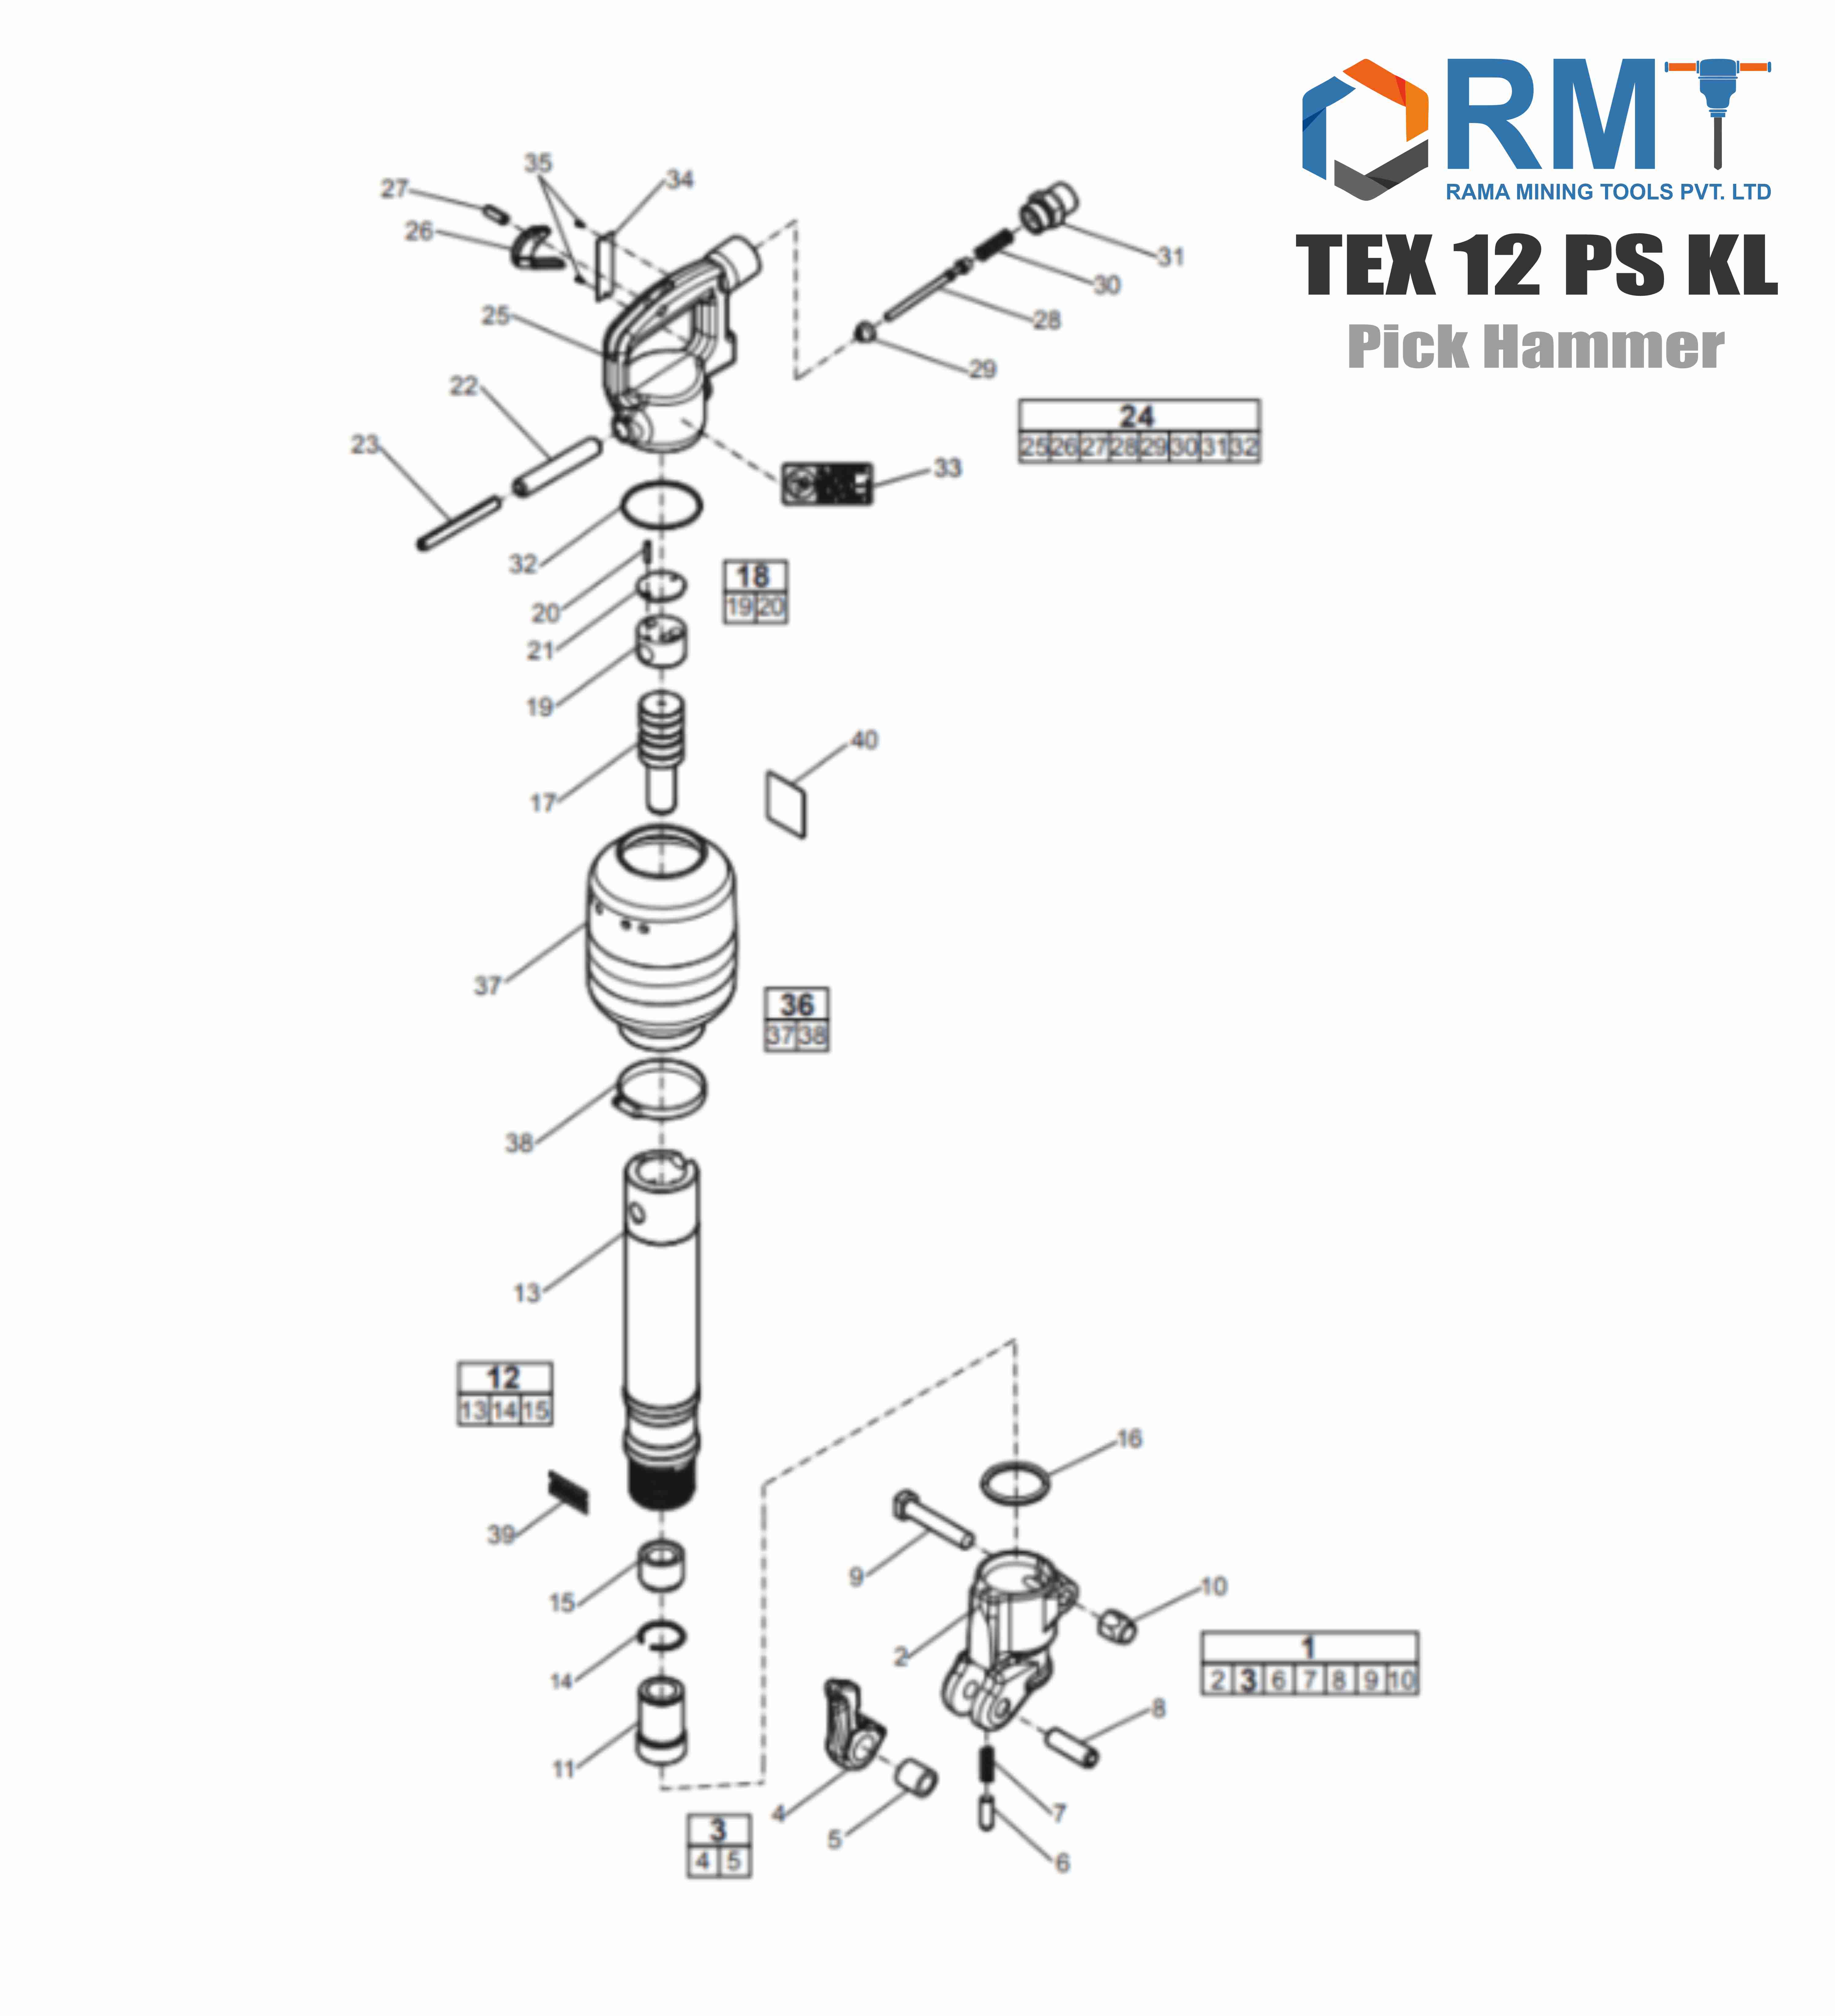 TEX 12 PS KL - Pick Hammer